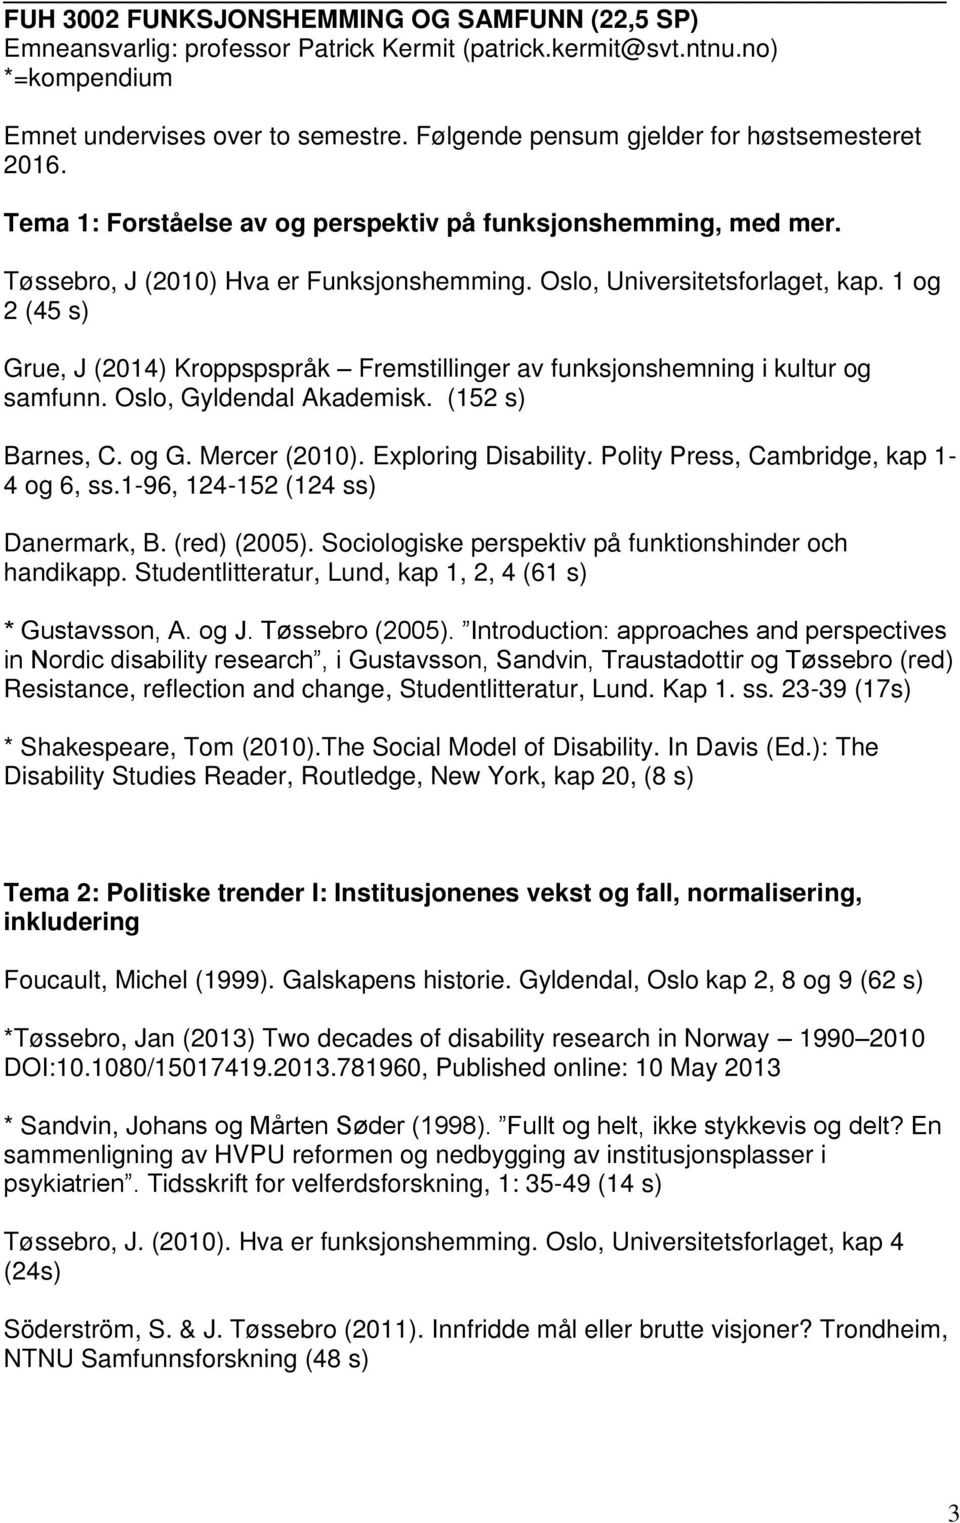 1 og 2 (45 s) Grue, J (2014) Kroppspspråk Fremstillinger av funksjonshemning i kultur og samfunn. Oslo, Gyldendal Akademisk. (152 s) Barnes, C. og G. Mercer (2010). Exploring Disability.